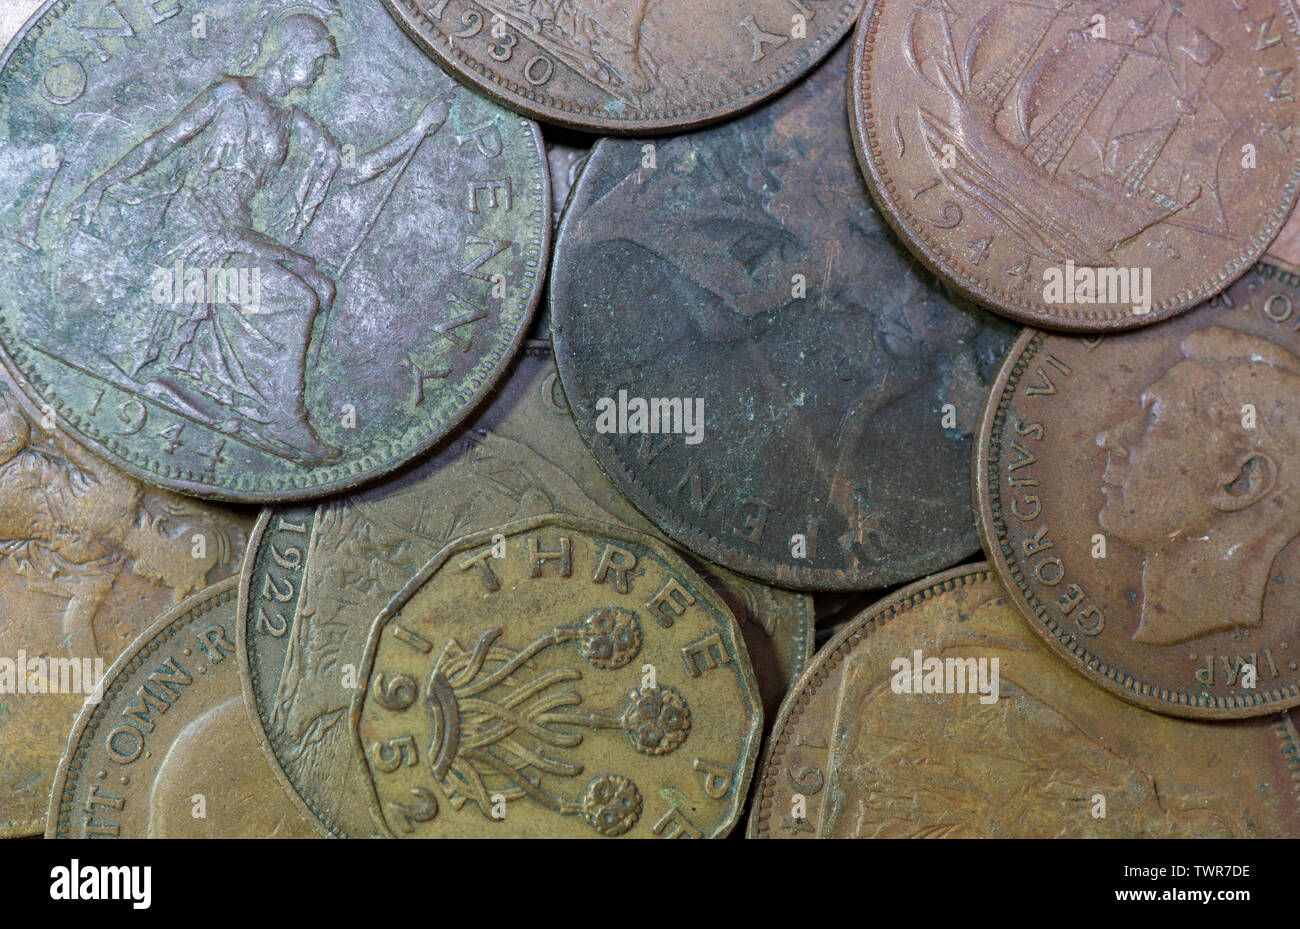 Alte britische Münzen, einen Cent Münzen. threepenny Bit, halfpenny und sixpence. Britische Inseln. Stockfoto